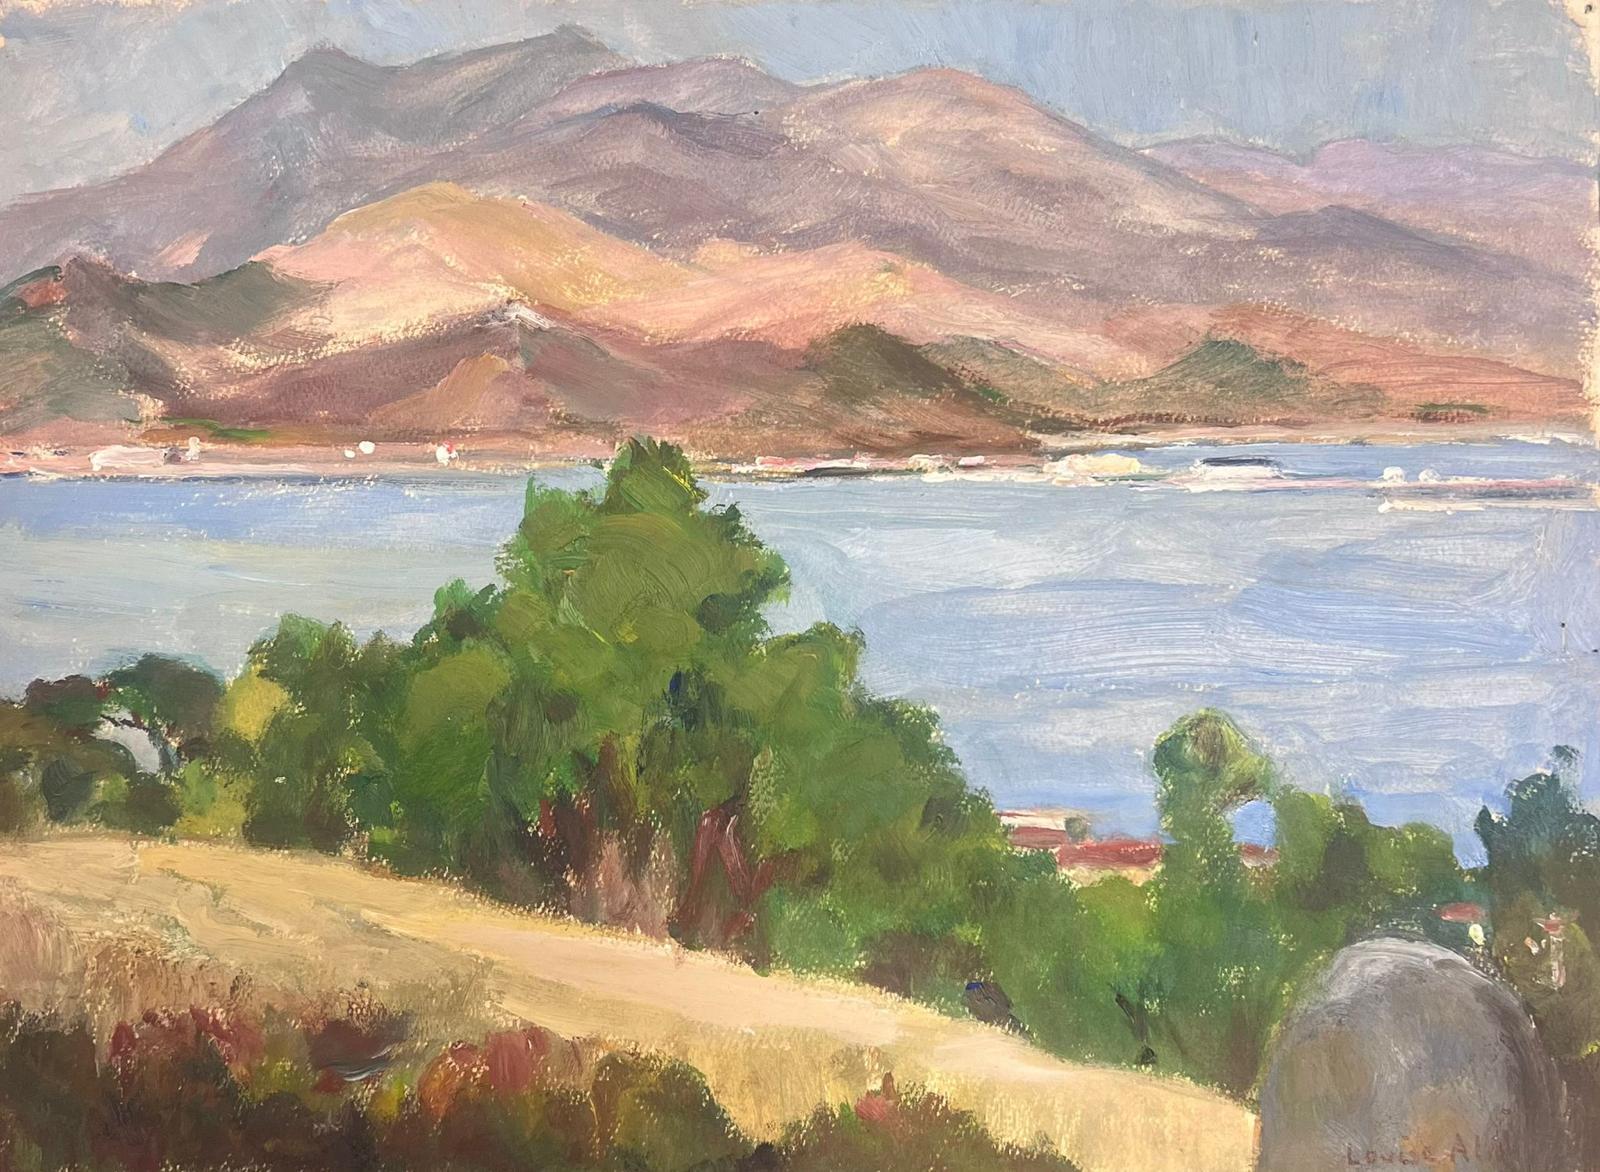 Landscape Painting Louise Alix - Peinture à l'huile française des années 1930 Paysage de montagnes violettes sur mer bleue 